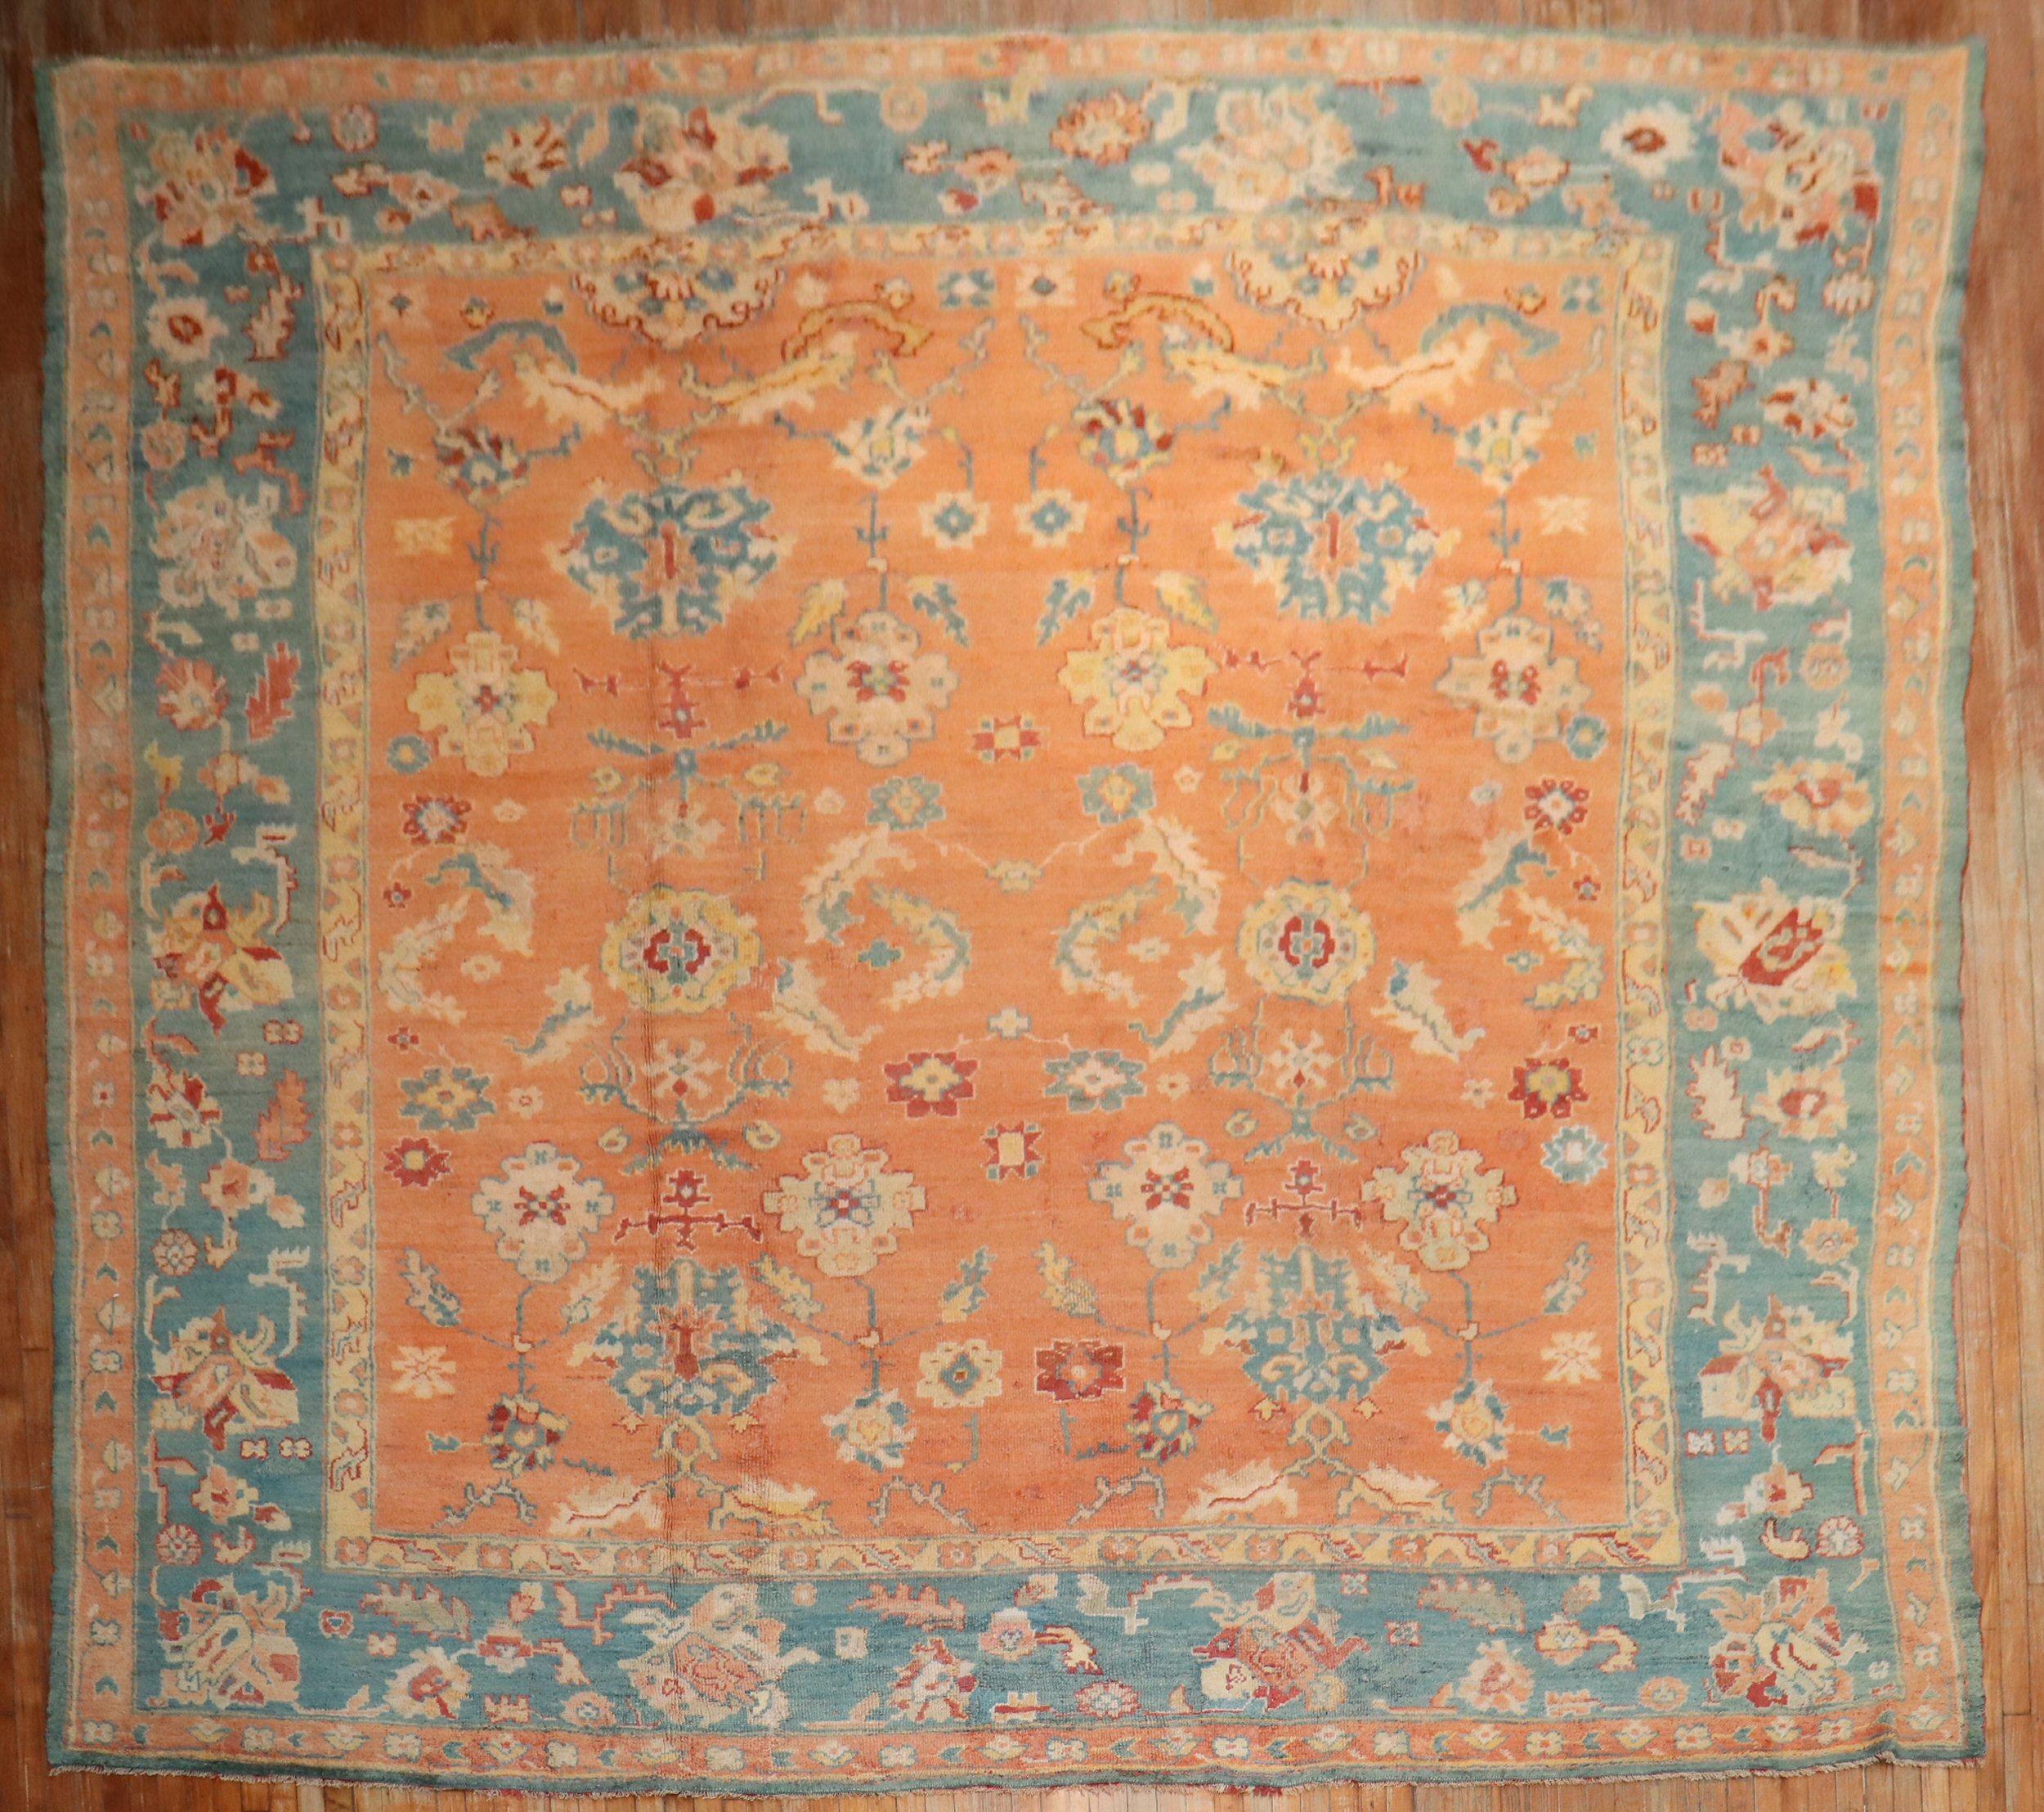 Ein antiker Oushak-Teppich aus dem frühen 20. Jahrhundert mit einem kürbisorangenen Feld und einer blaugrünen Bordüre

Maße: 12'10